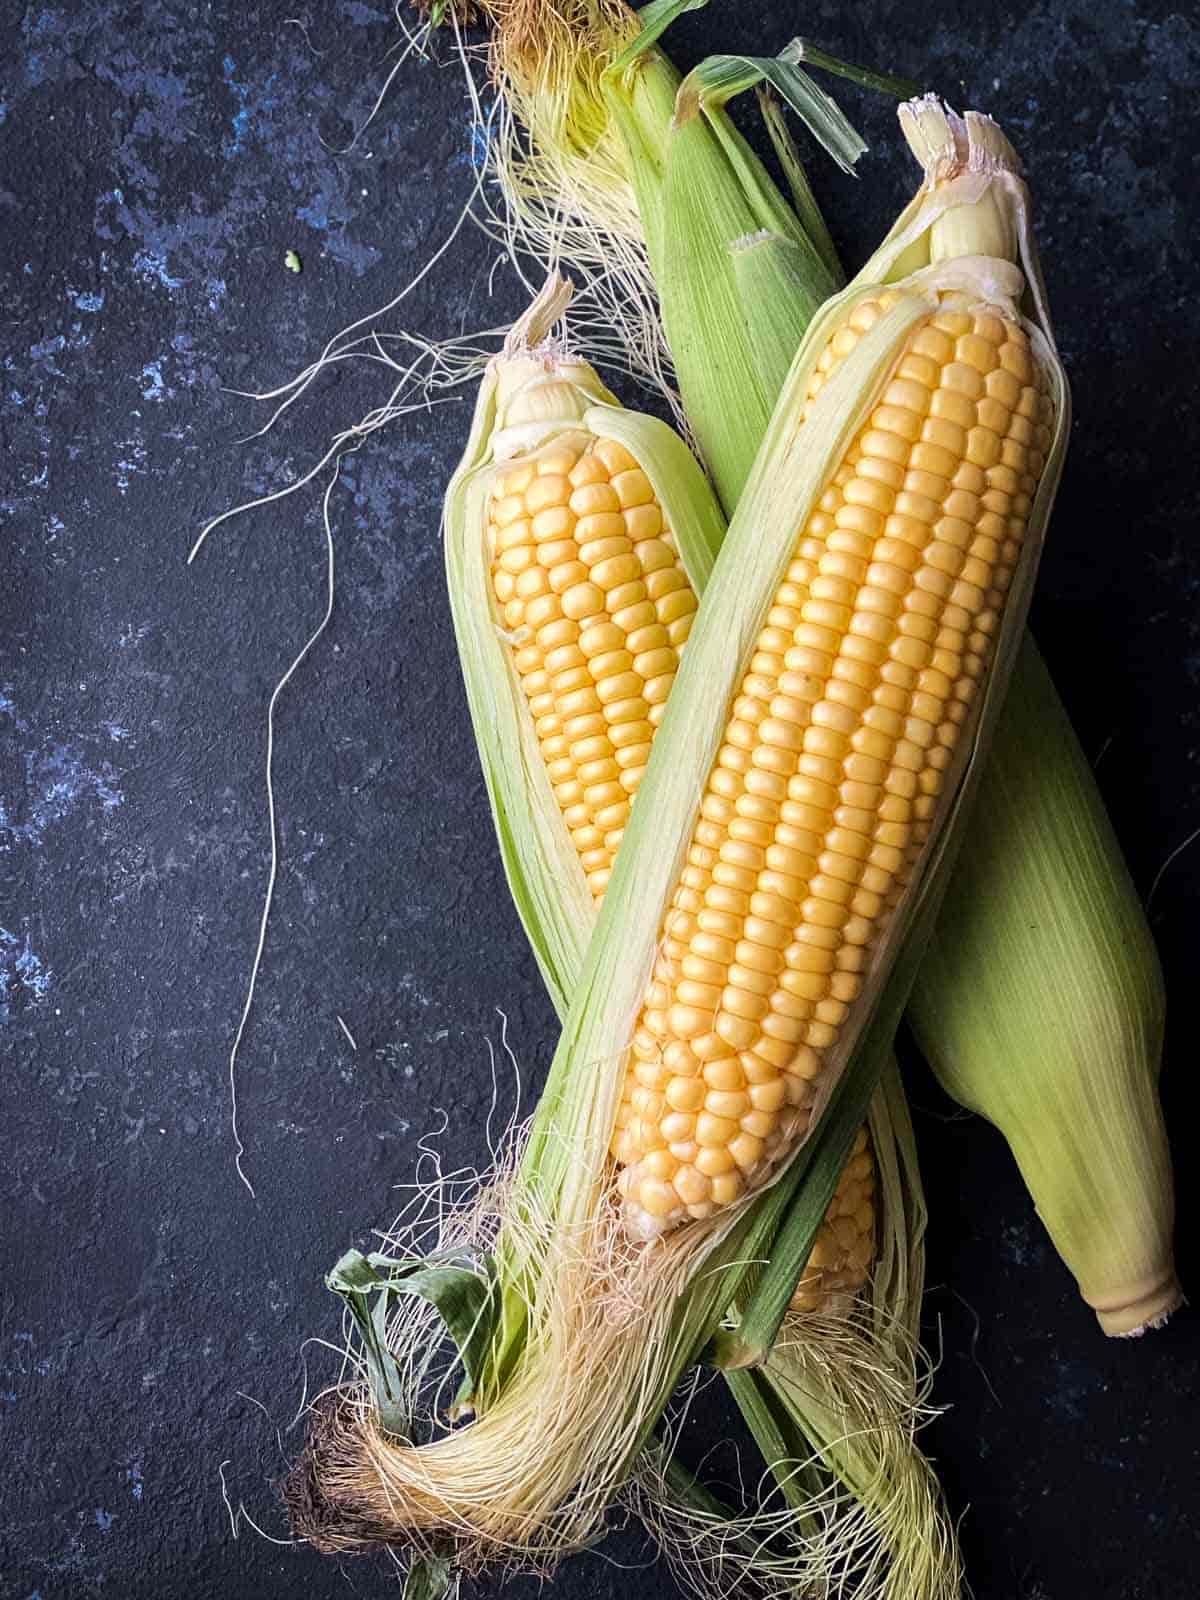 3 corn on the cob